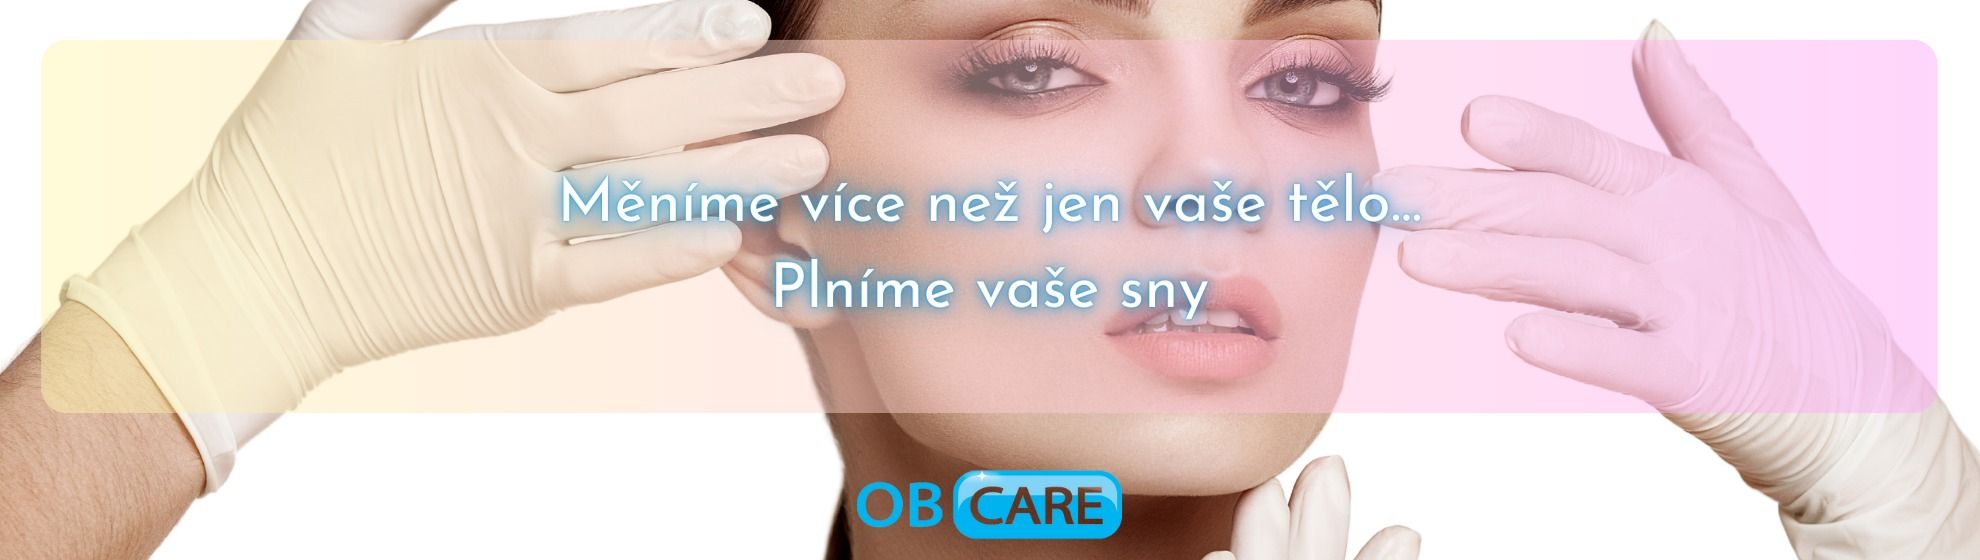 OB Care